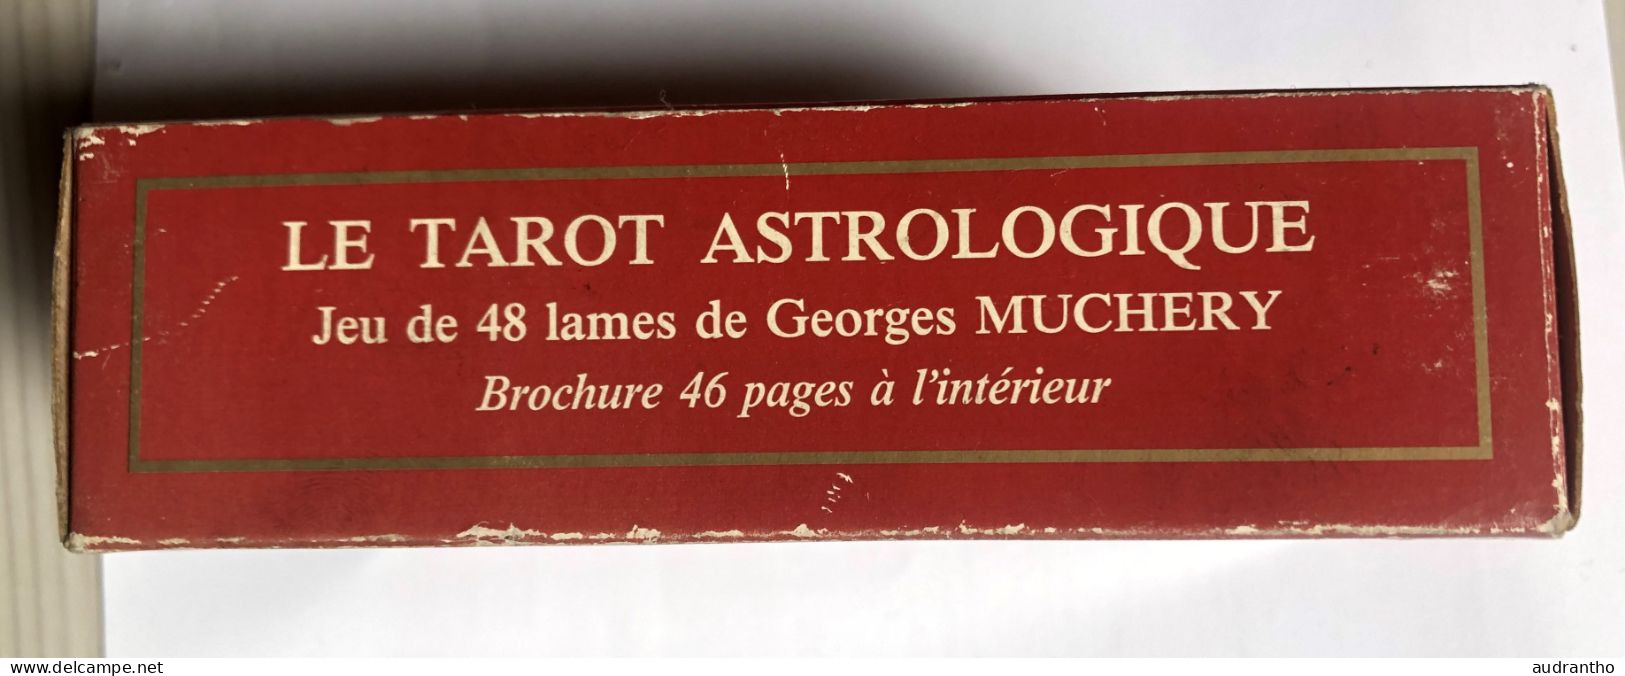 très beau jeu de Tarot divinatoire Voyance - Tarot astrologique de Georges Muchery 1987 - éditions du Chariot